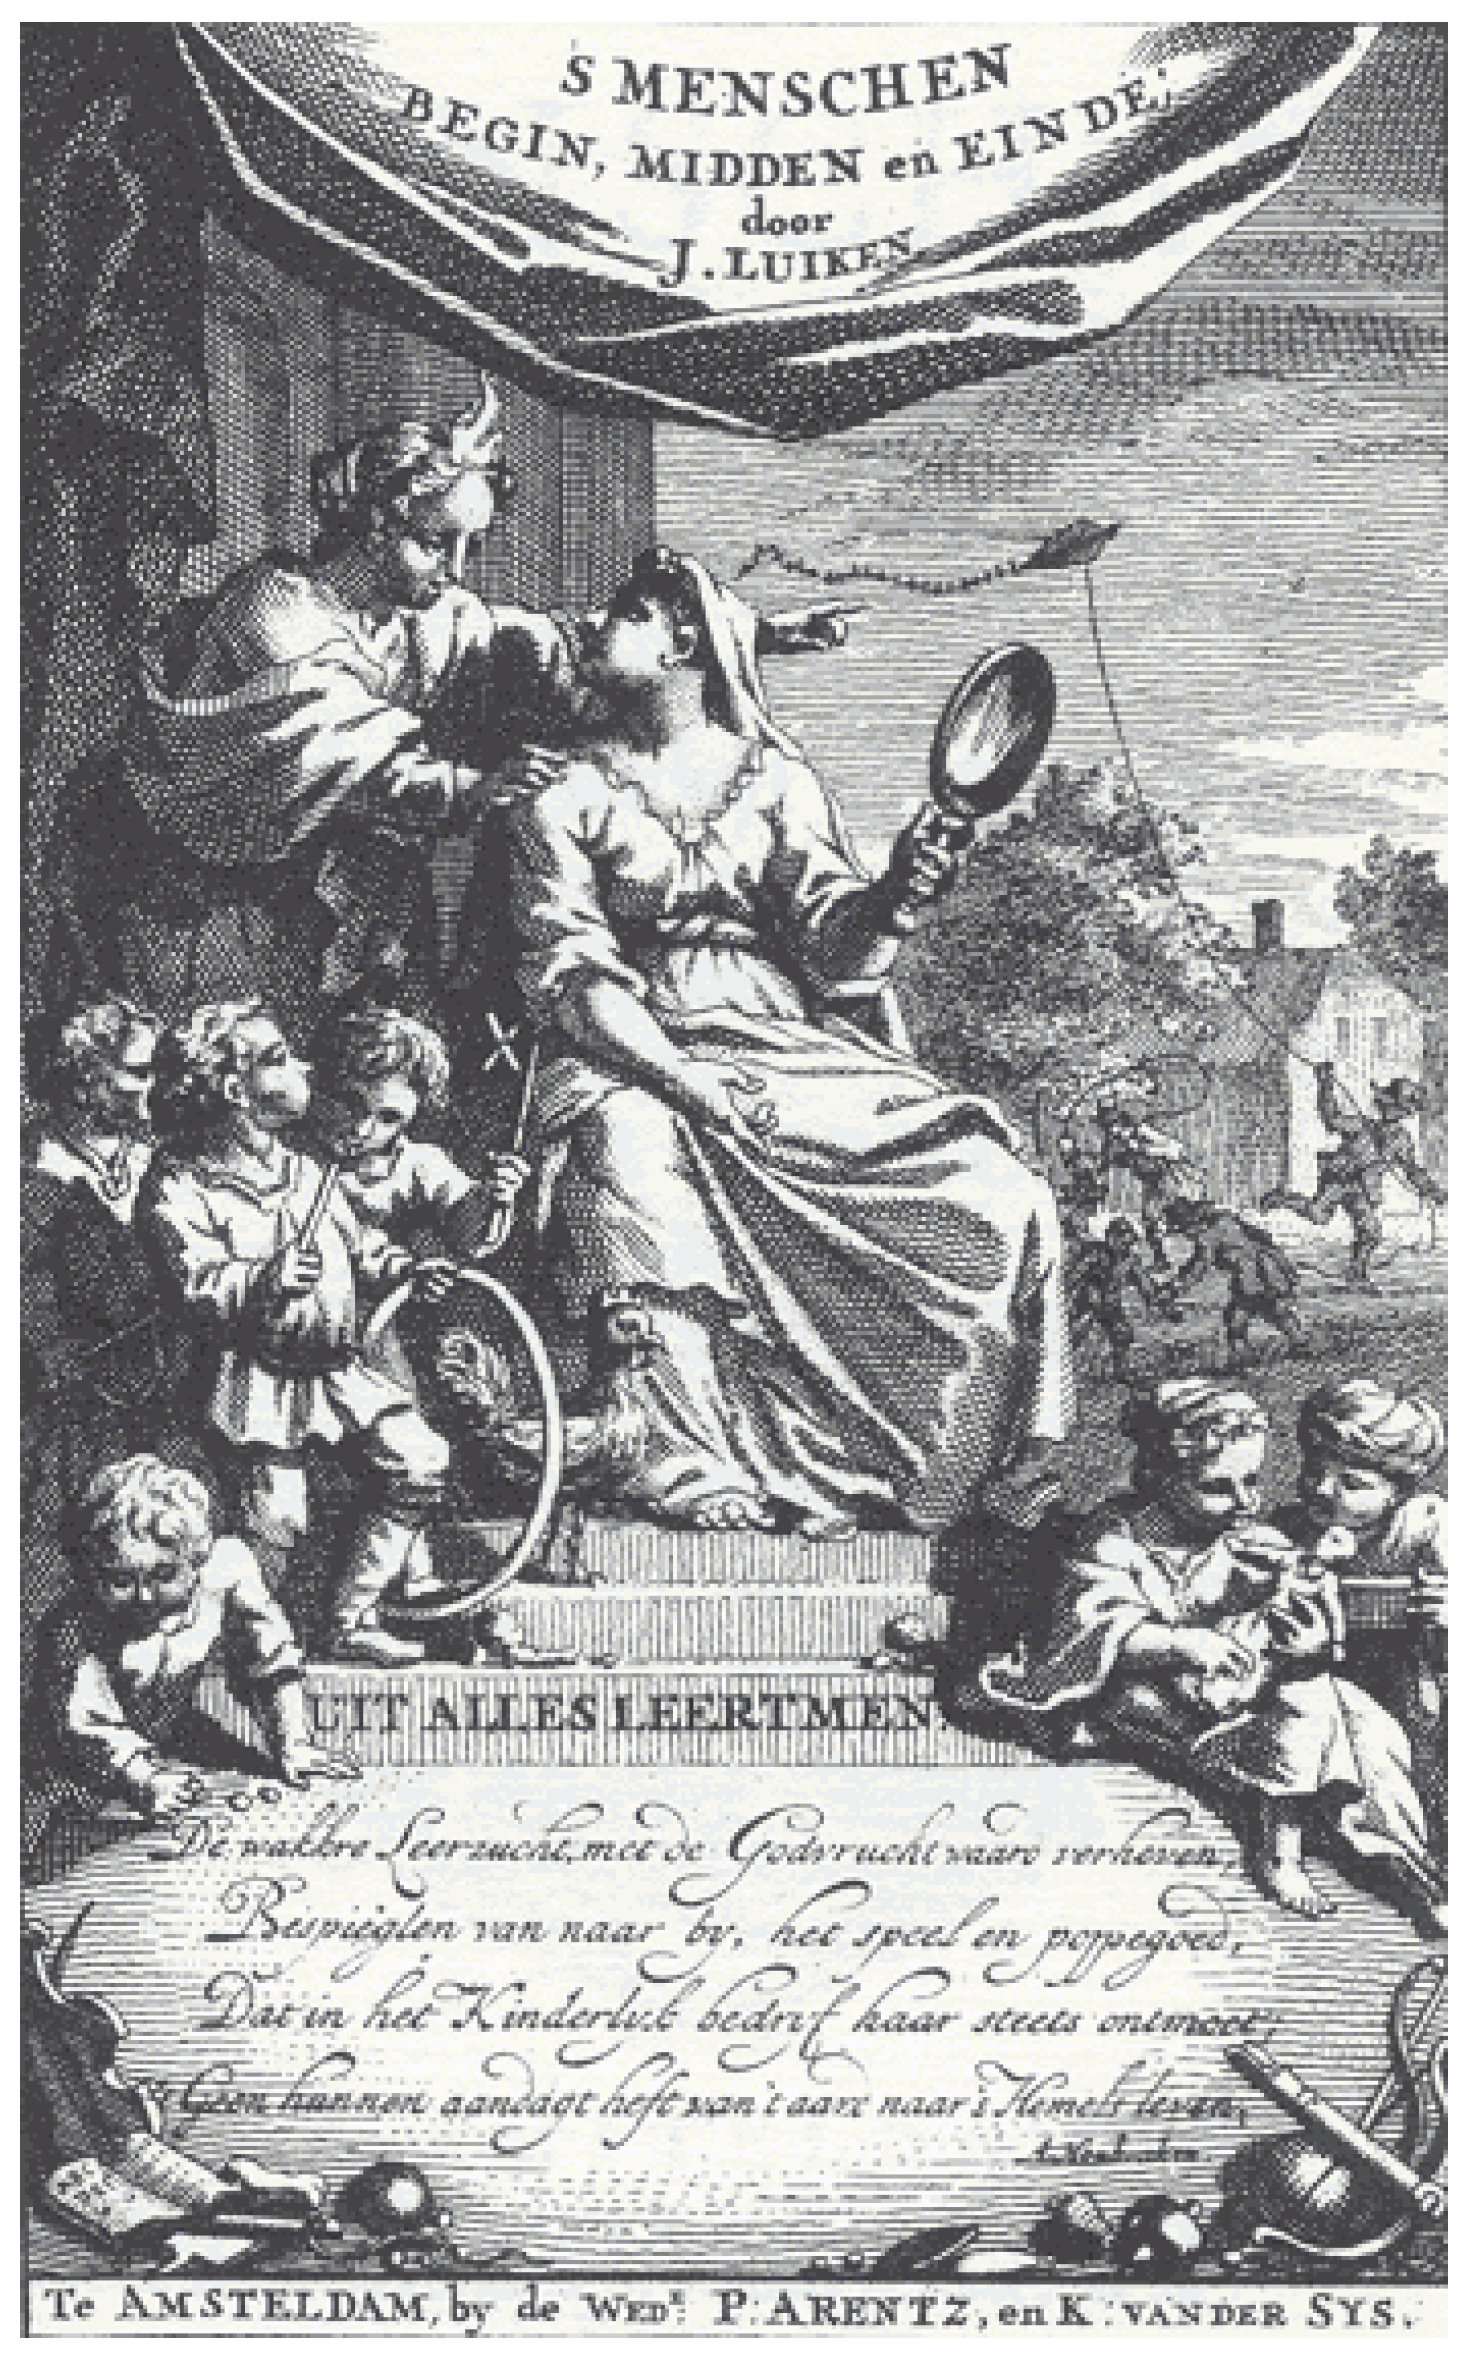 Begin, Jan Painting Menschen, Humanities Einde The Full-Text Luyken’s | Genre Prints: Emblematic of en Des Free Influence Midden | (1712) in Dutch